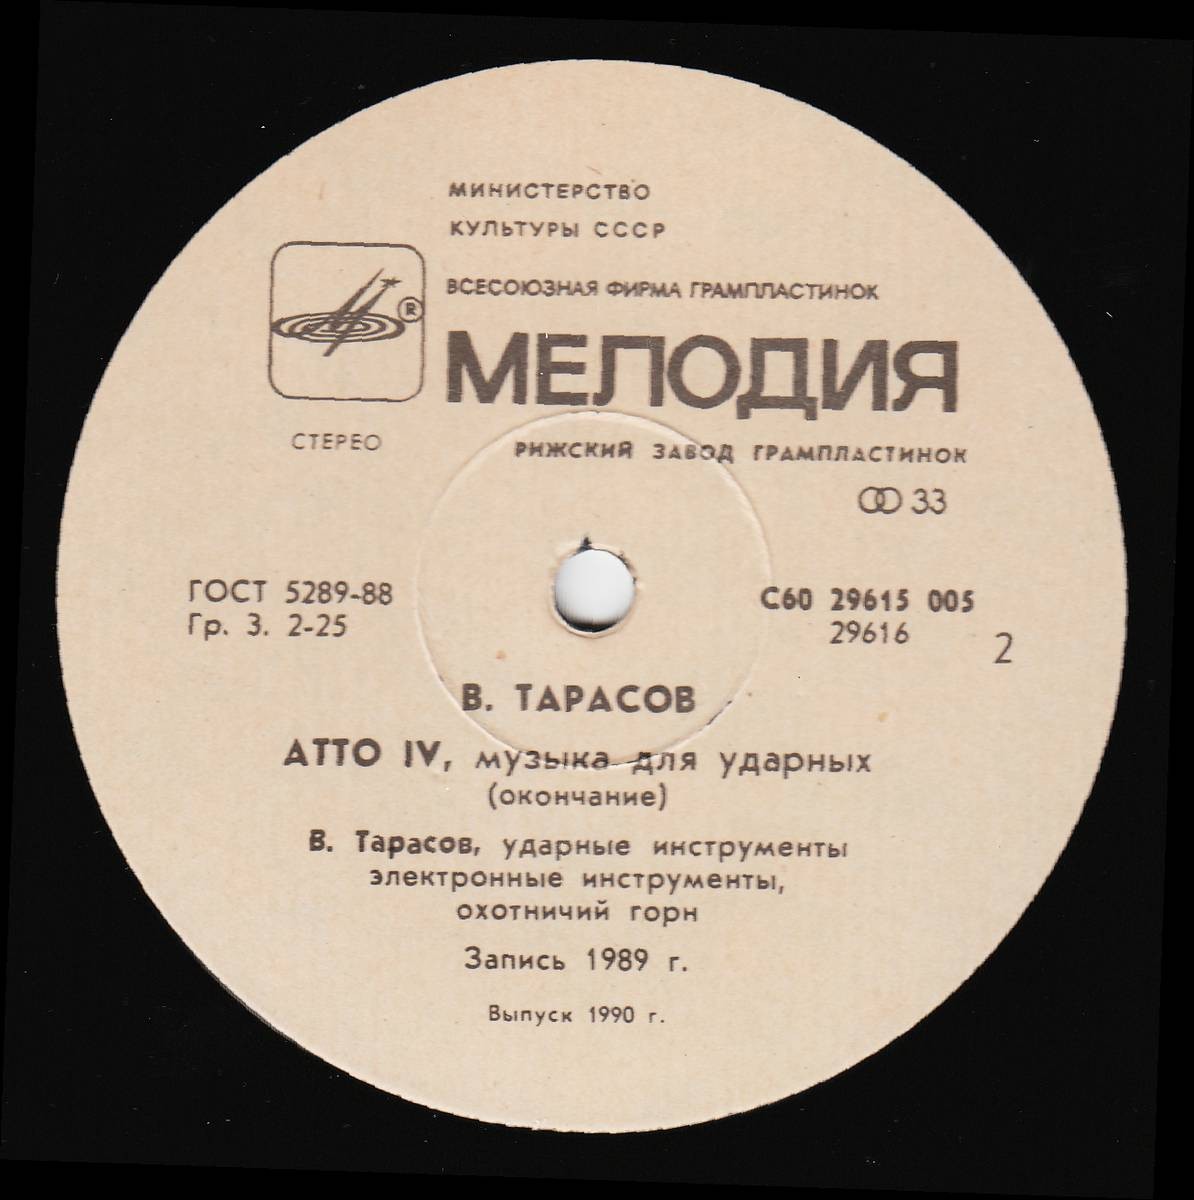 ТАРАСОВ Владимир «Atto IV», композиция в двух частях для ударных инструментов.